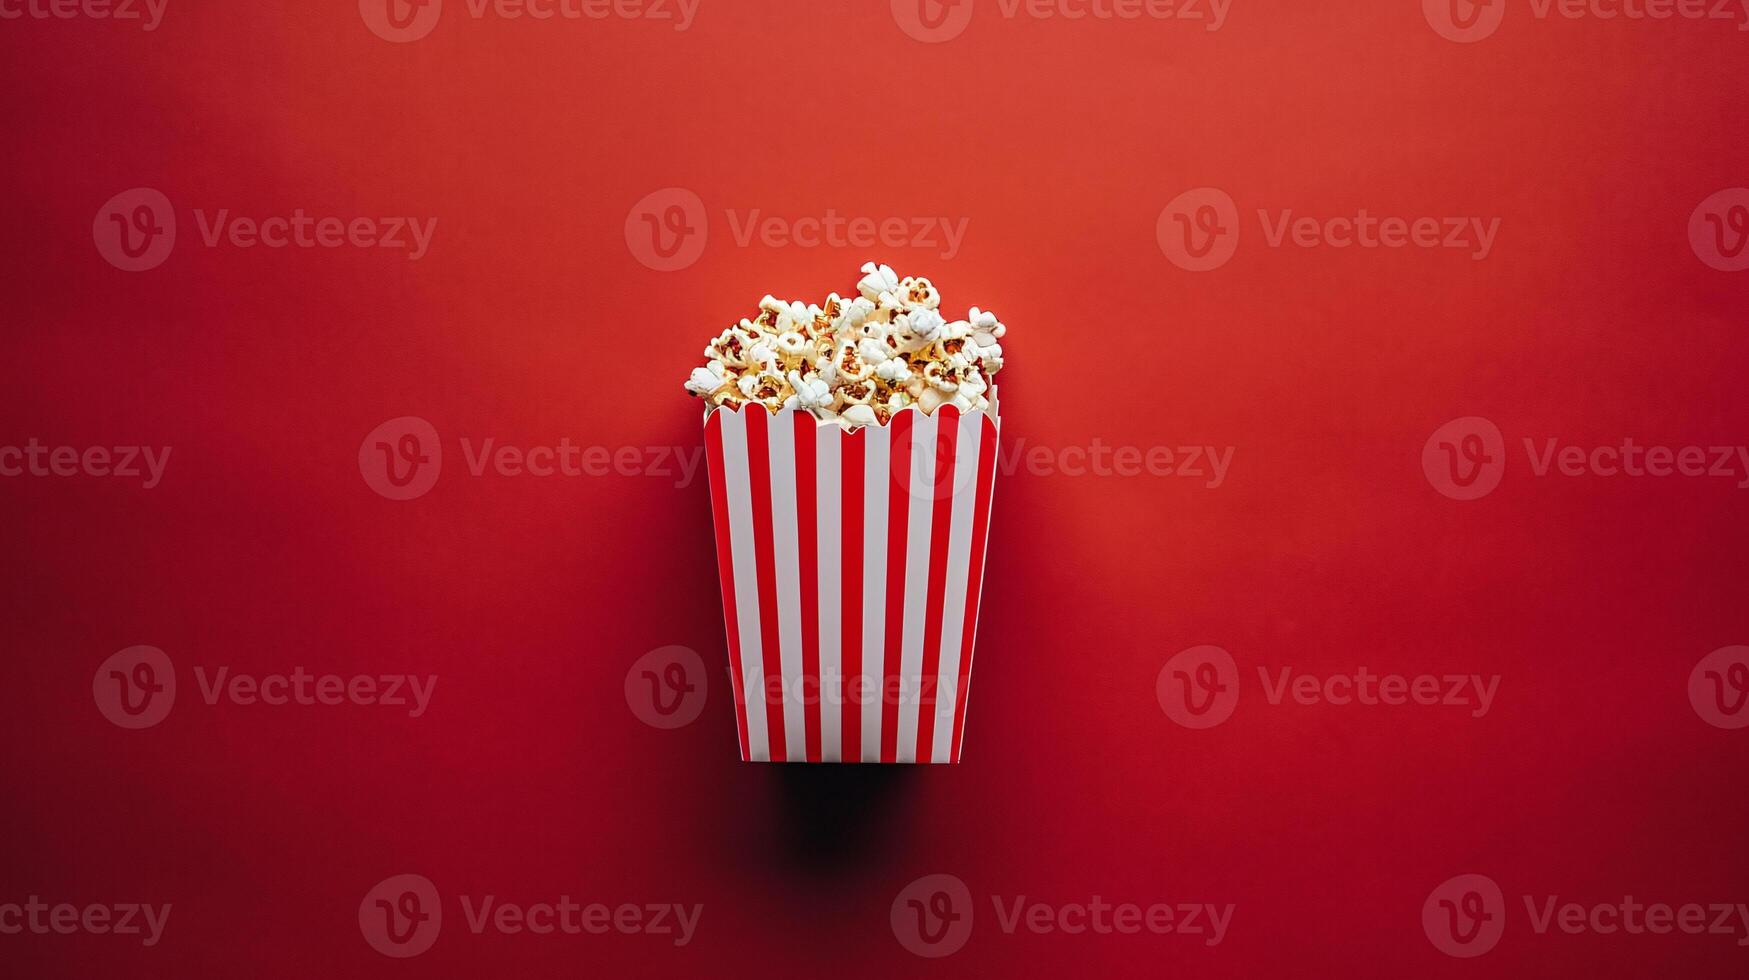 en slående sammansättning terar en frestande packa av popcorn mot en vibrerande, enfärgad bakgrund foto